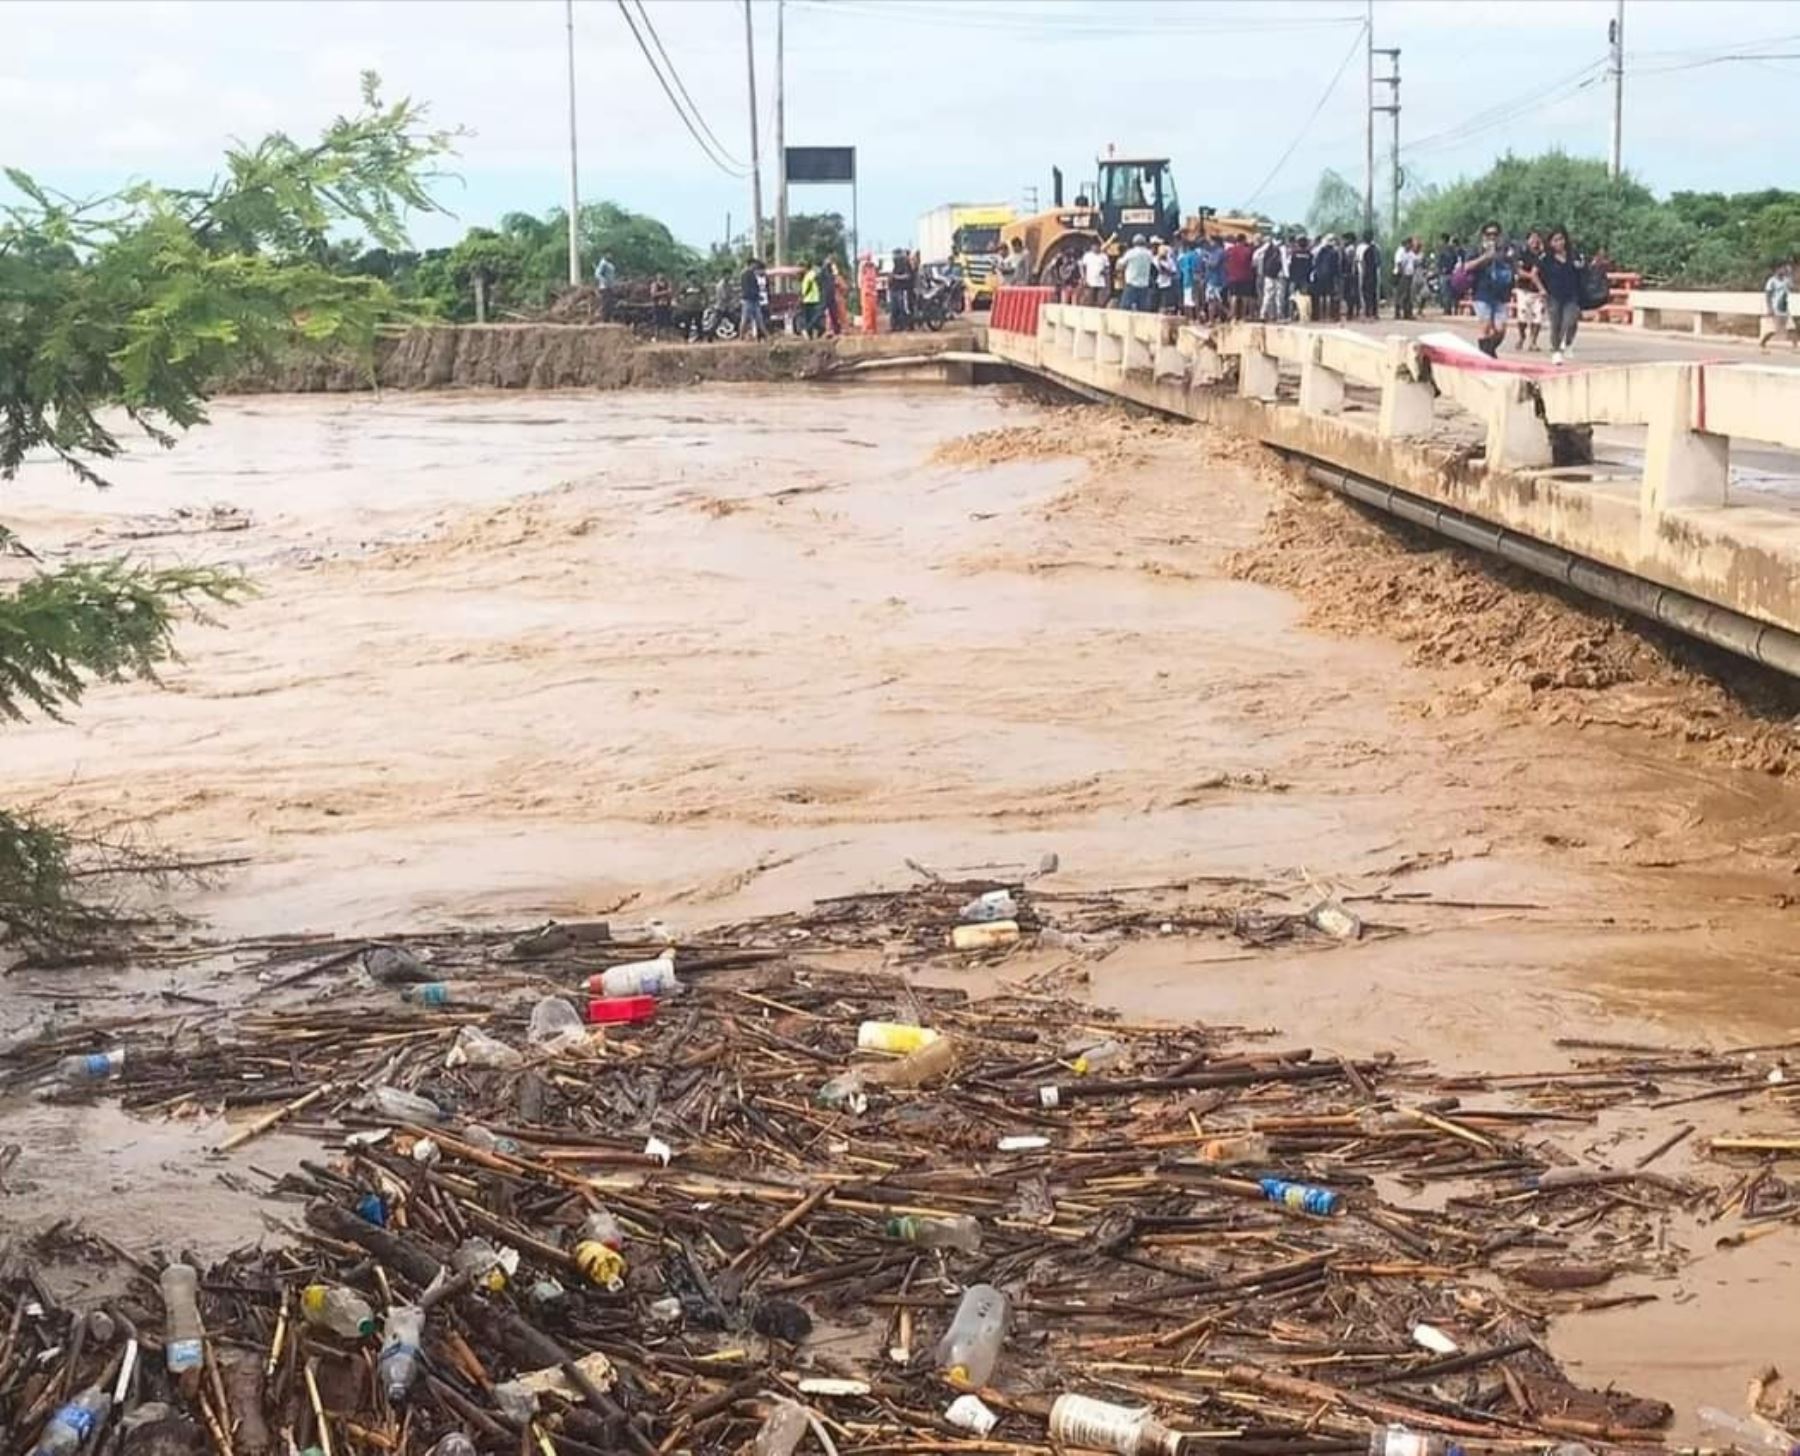 El río La Leche incrementó peligrosamente su caudal a causa de las lluvias intensas que se registran en Lambayeque y por ese motivo se cerró el puente que comunica Chiclayo con otros distritos. Foto: ANDINA/difusión.